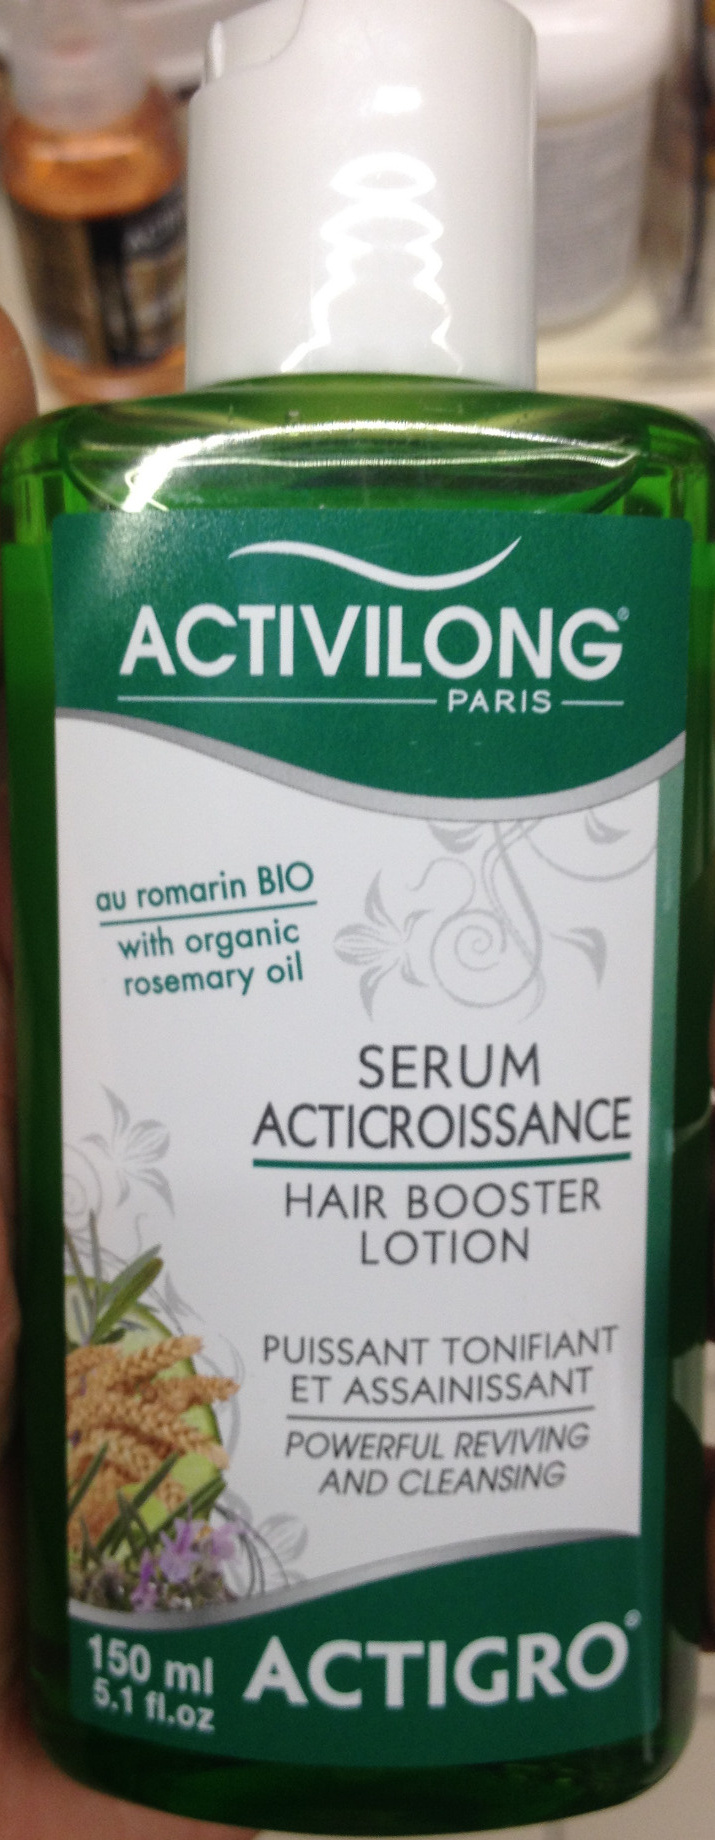 Actigro Serum acticroissance - Produkt - fr